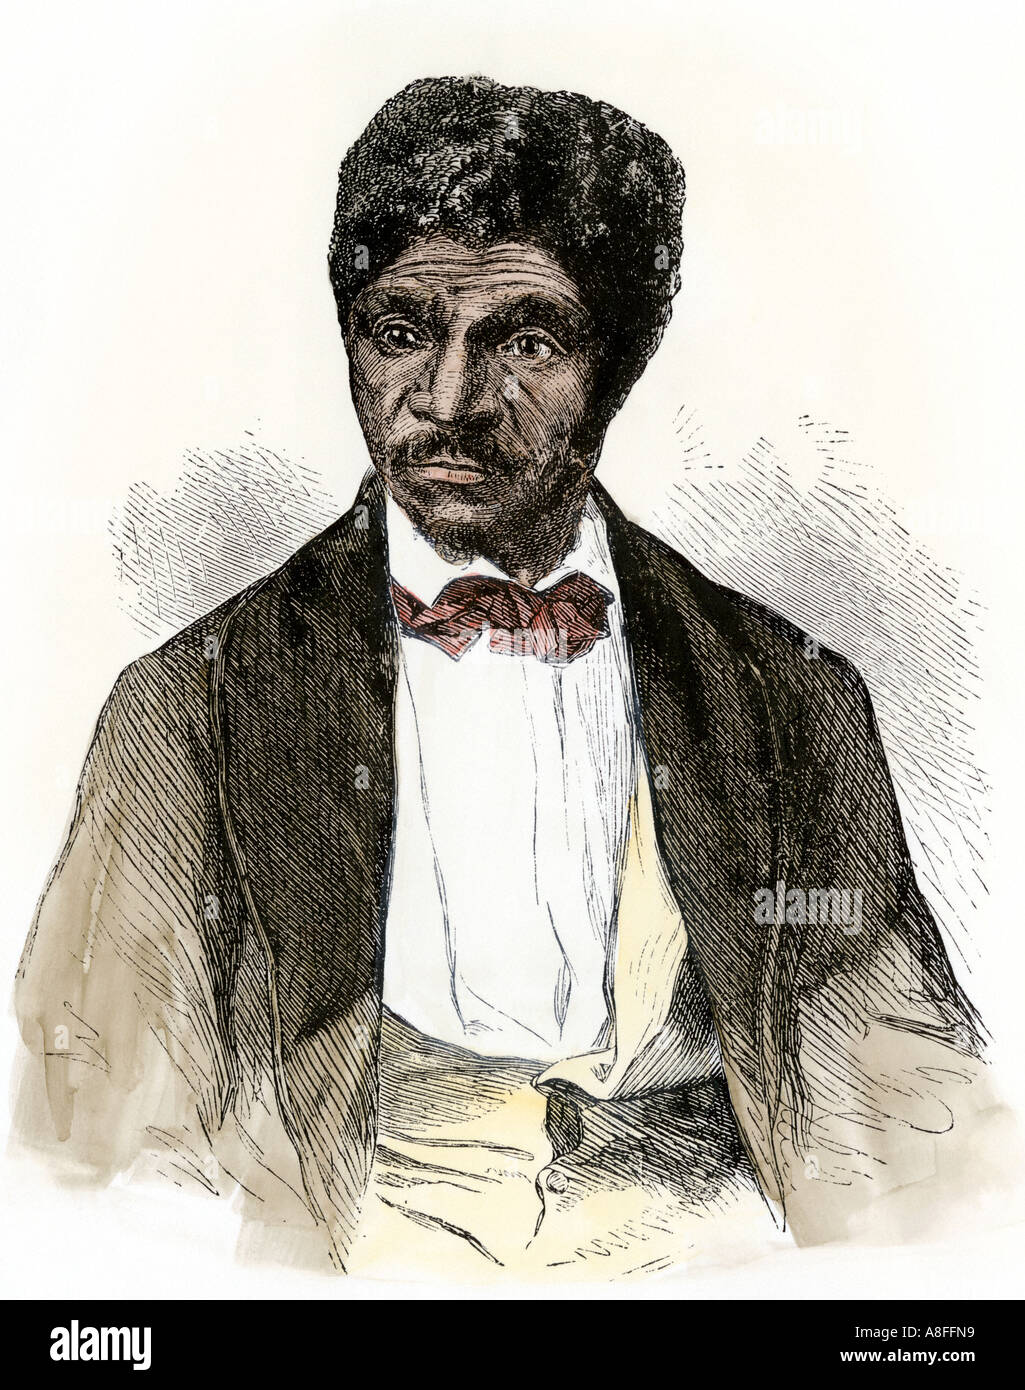 Dred Scott nel 1857 che ha perso la Corte suprema e il caso è stato restituito alla schiavitù dopo che risiedono in uno stato libero. Colorate a mano la xilografia Foto Stock